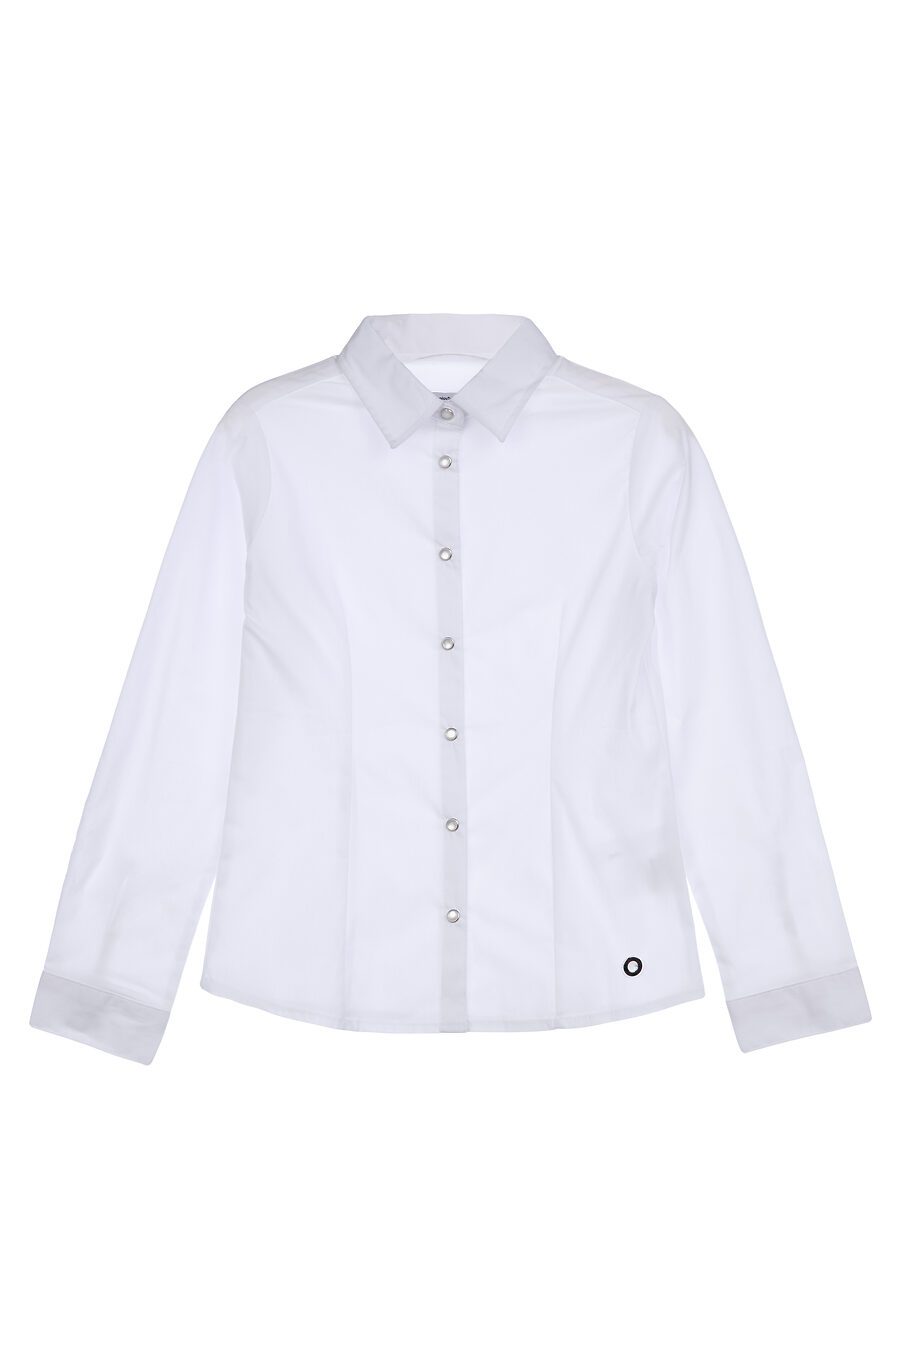 Блуза PLAYTODAY (785748), купить в Moyo.moda